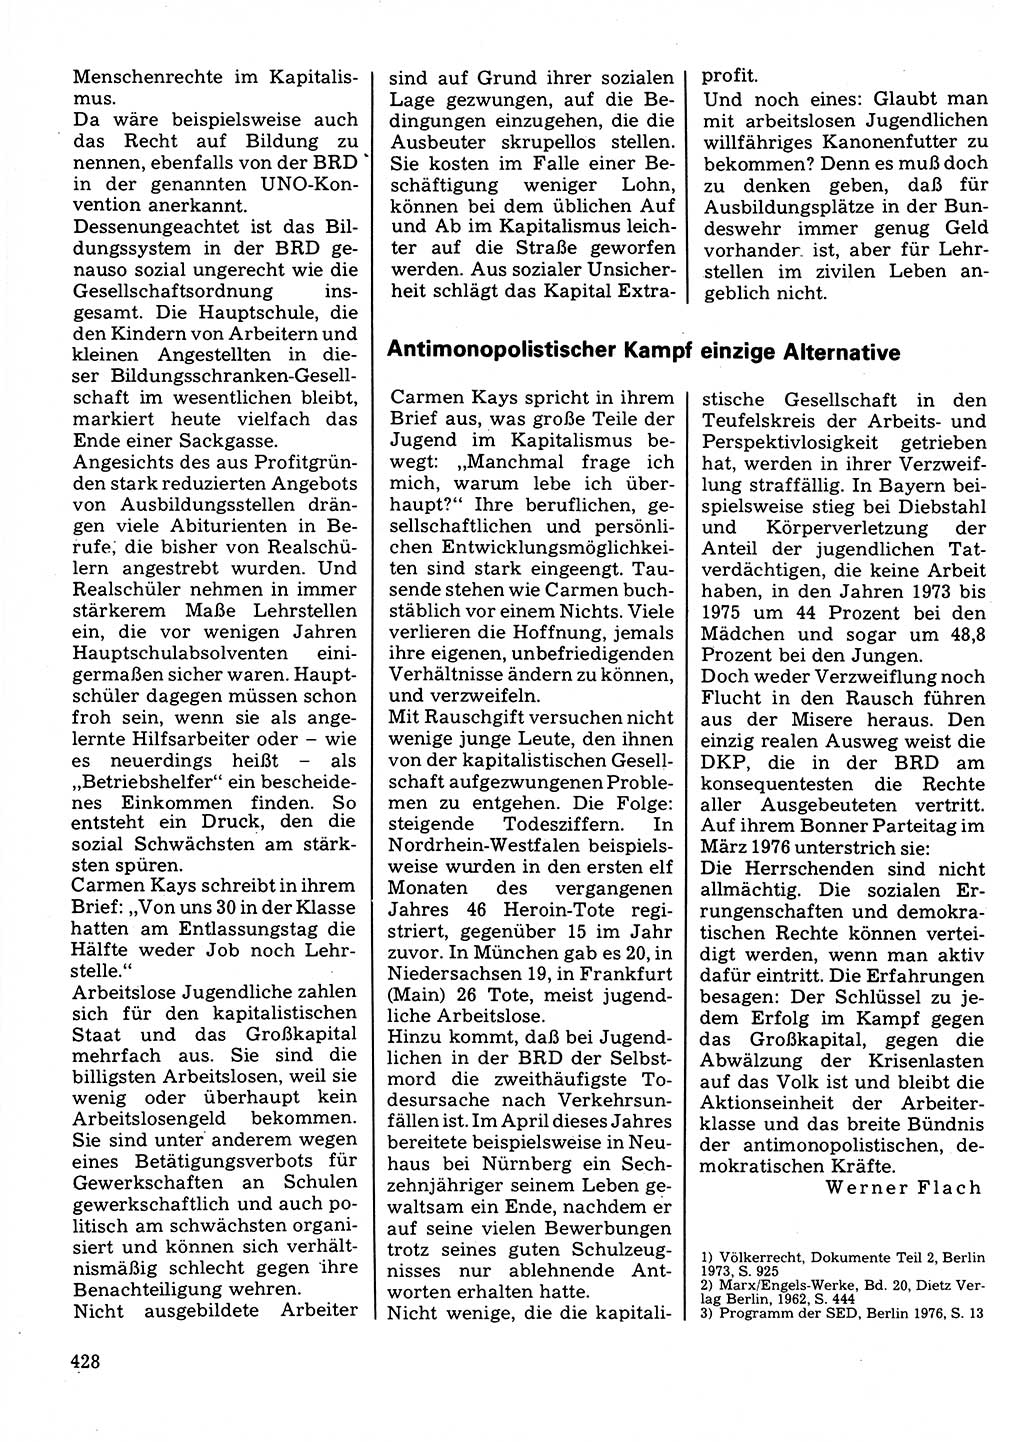 Neuer Weg (NW), Organ des Zentralkomitees (ZK) der SED (Sozialistische Einheitspartei Deutschlands) für Fragen des Parteilebens, 32. Jahrgang [Deutsche Demokratische Republik (DDR)] 1977, Seite 428 (NW ZK SED DDR 1977, S. 428)